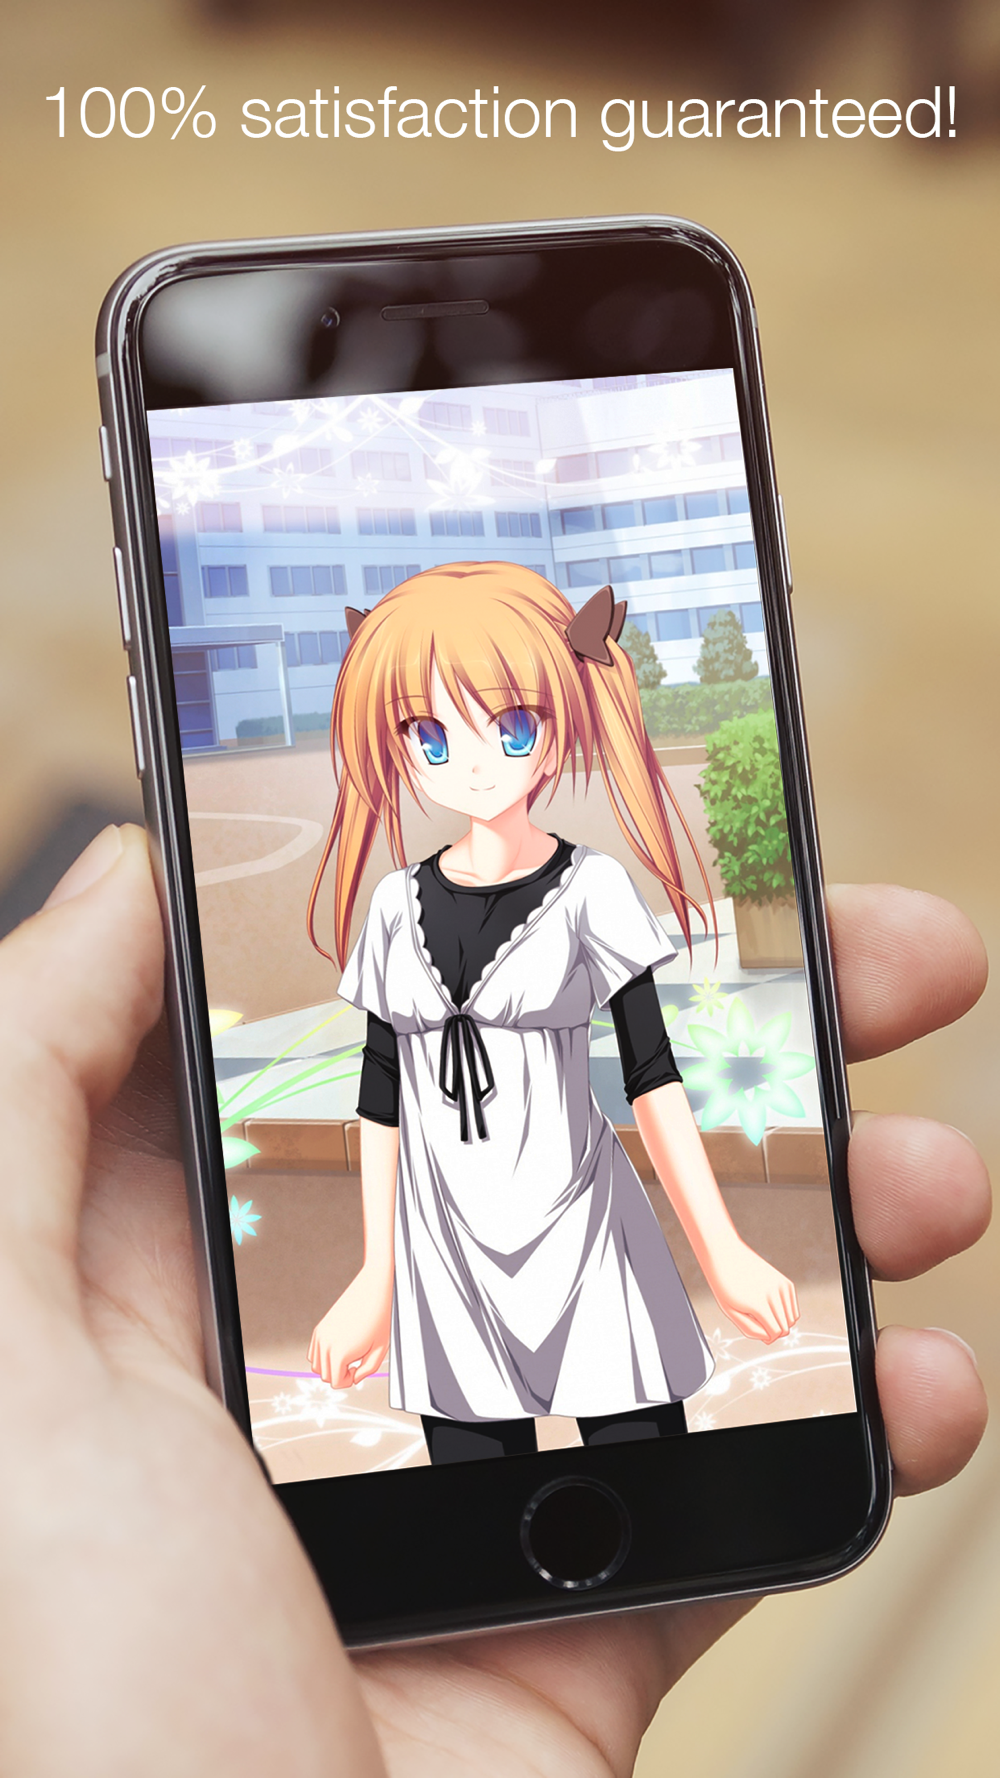 Phim hoạt hình đáng yêu và manga anime Download App for iPhone -  